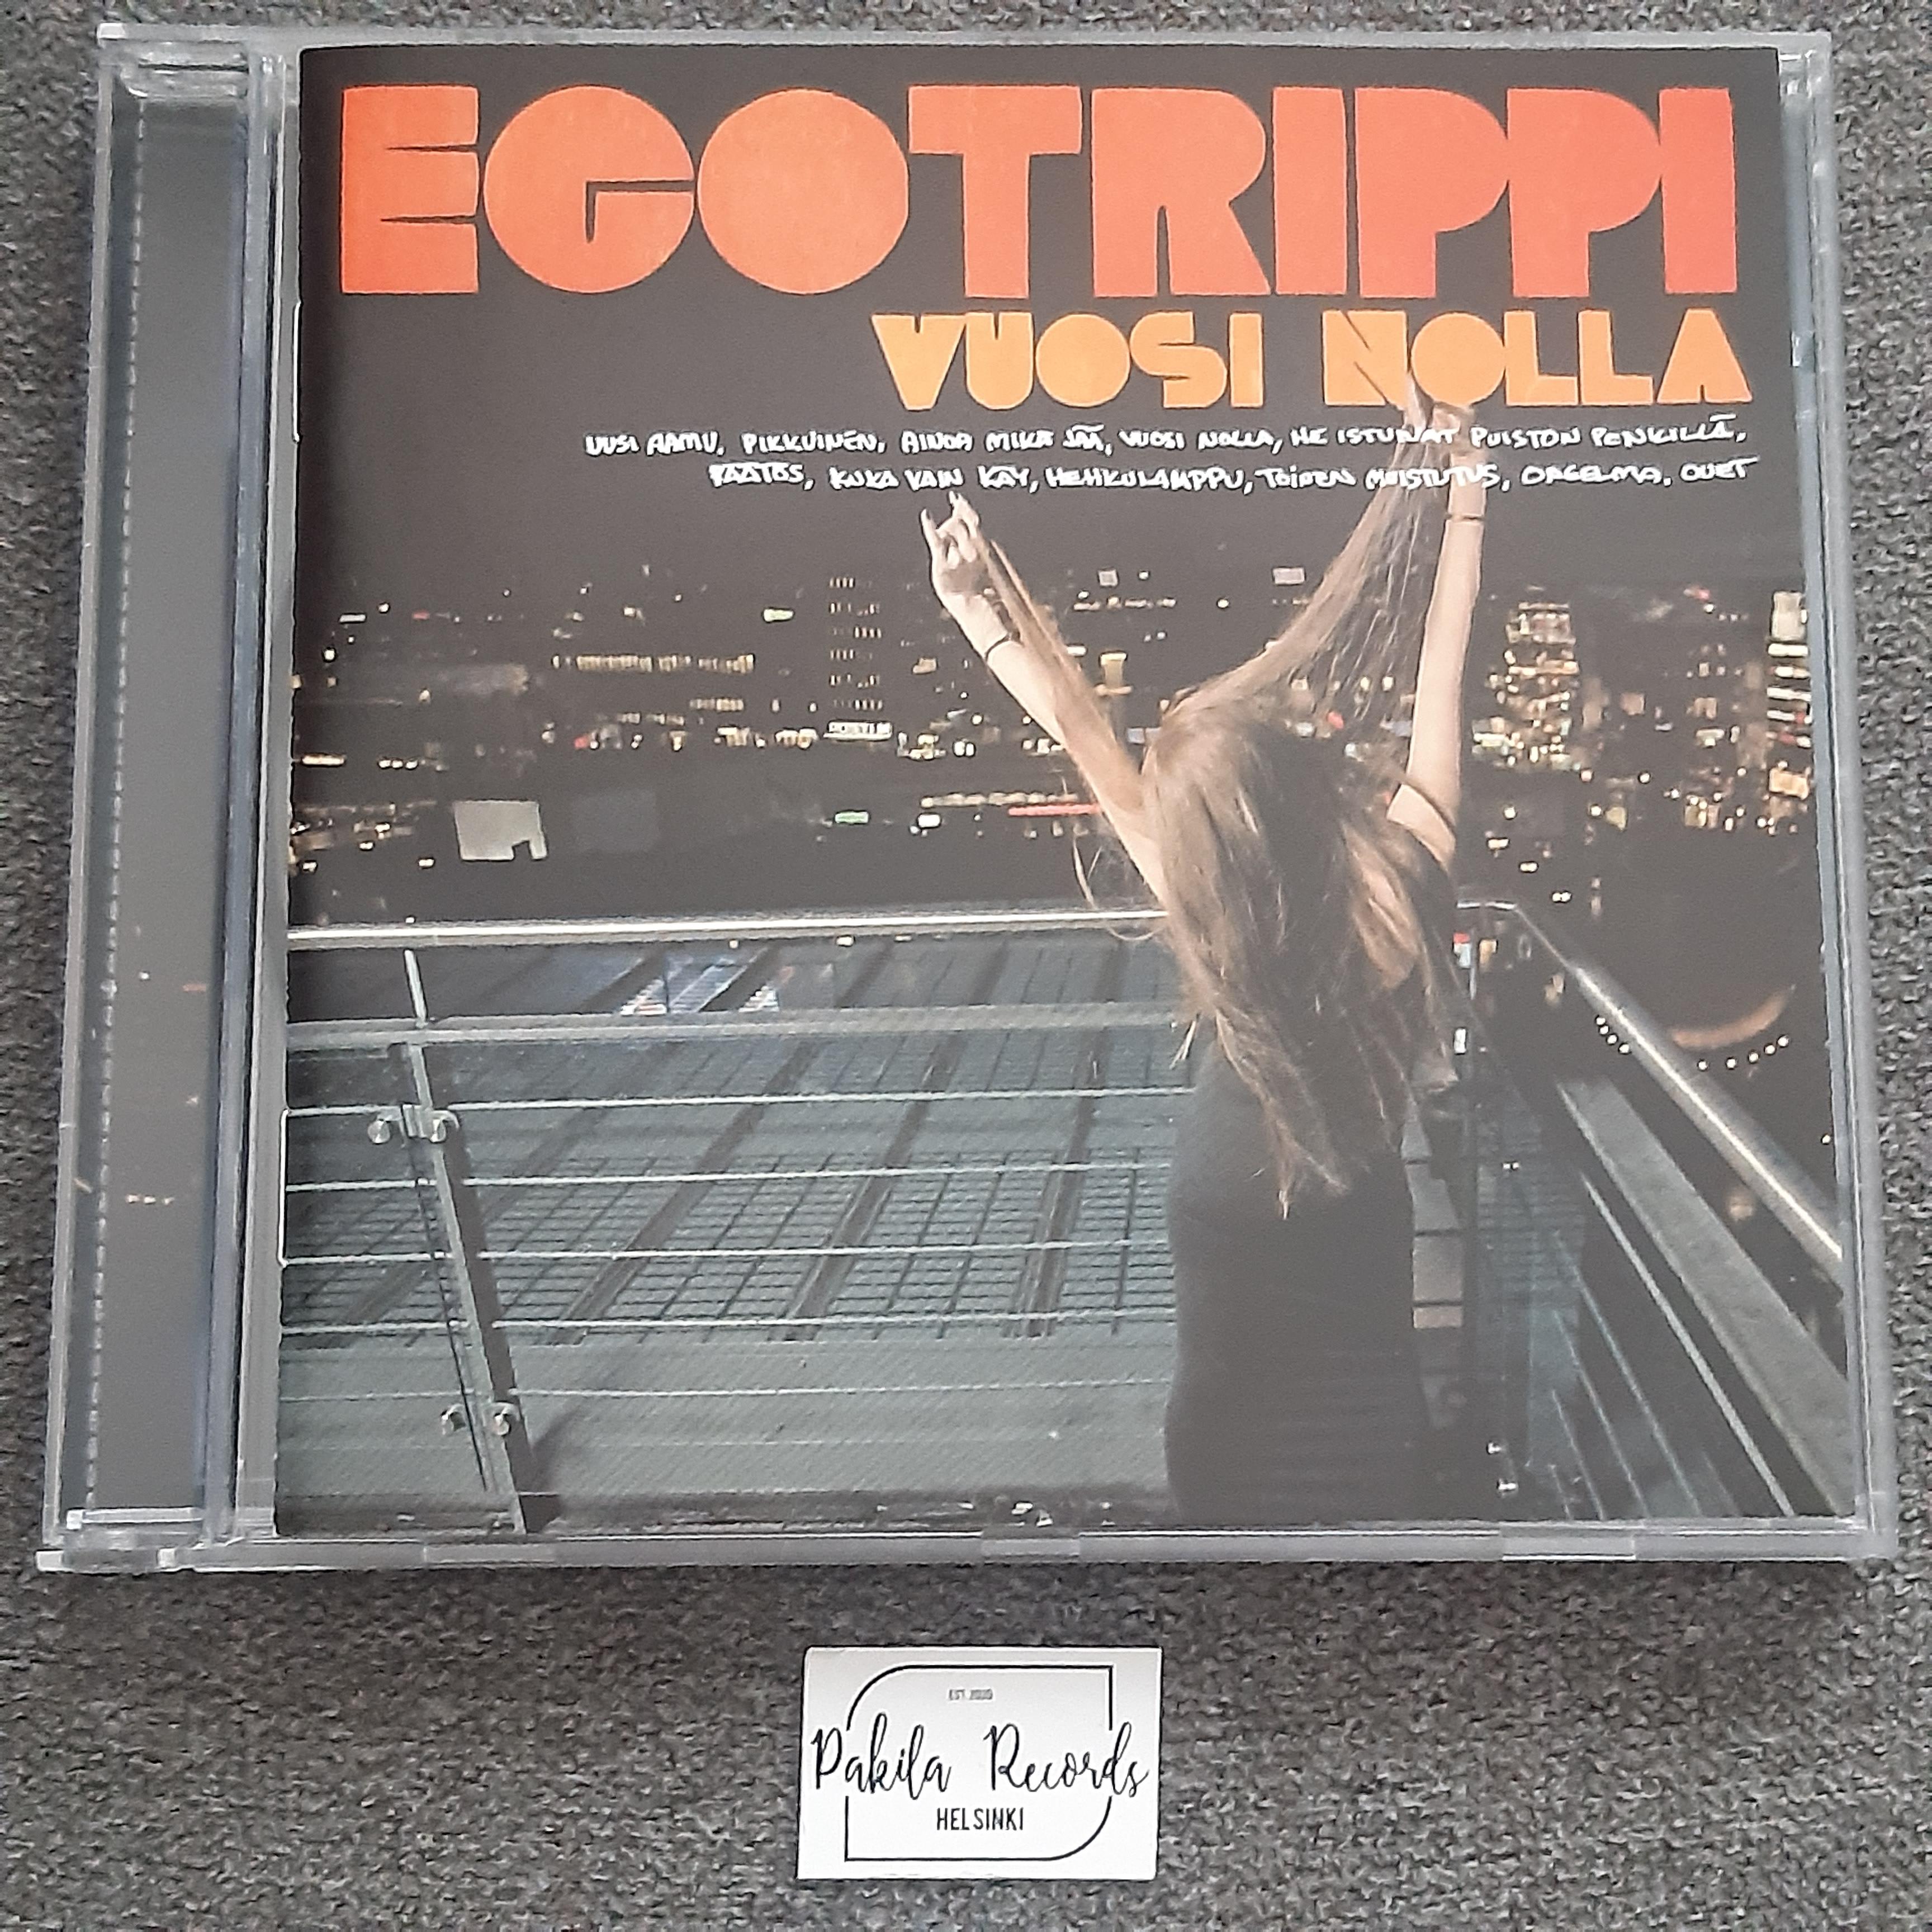 Egotrippi - Vuosi nolla - CD (käytetty)